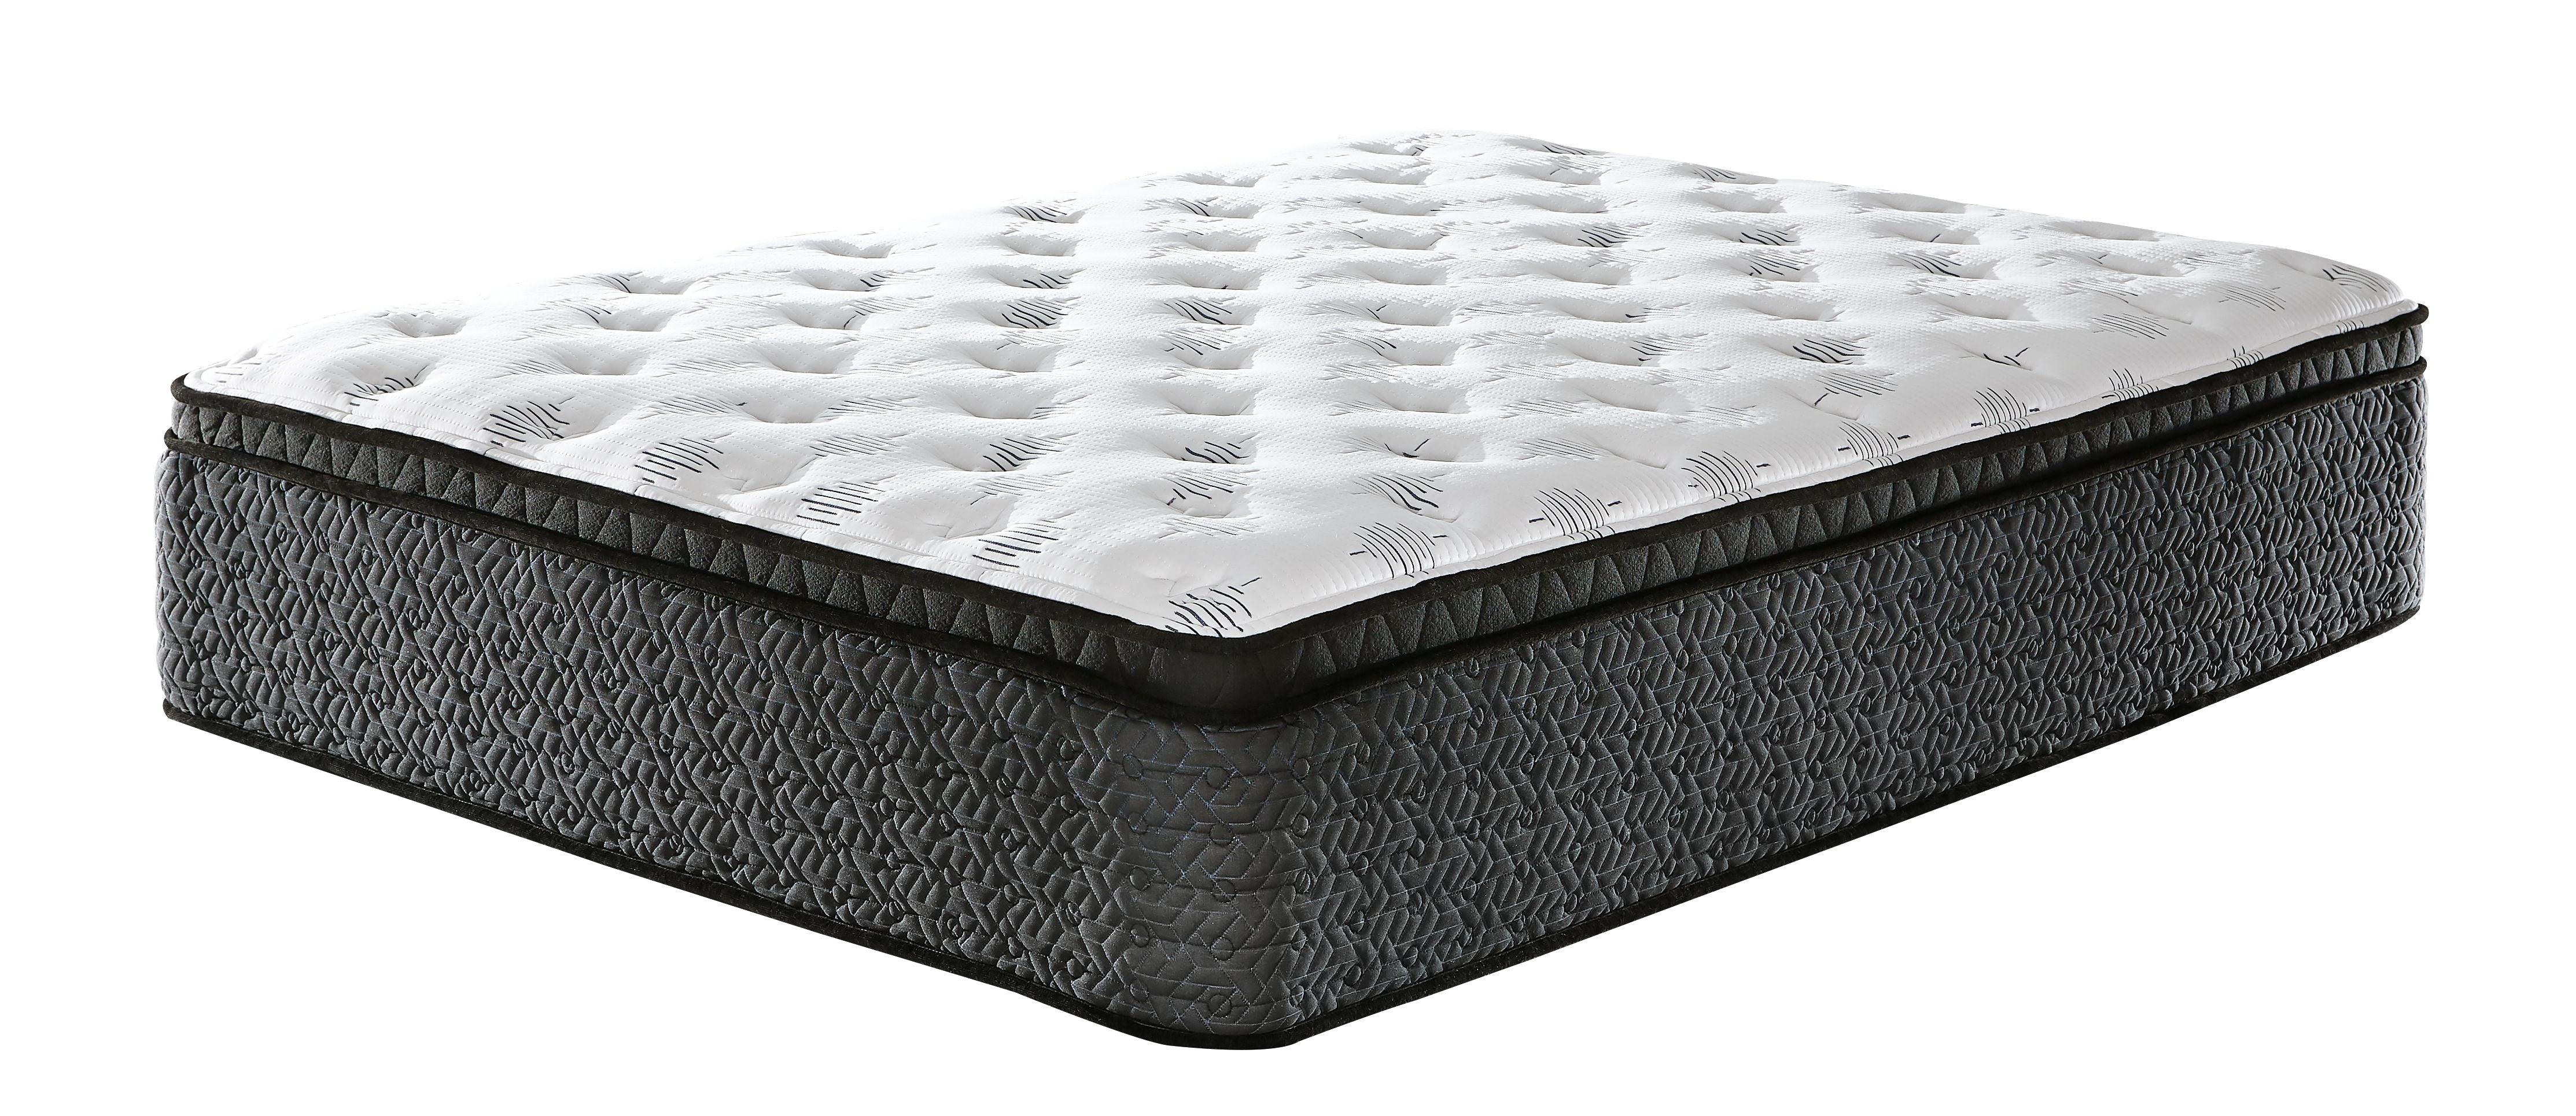 Ashley Furniture - Ultra Luxury - Memory Foam Euro Top Mattress - 5th Avenue Furniture